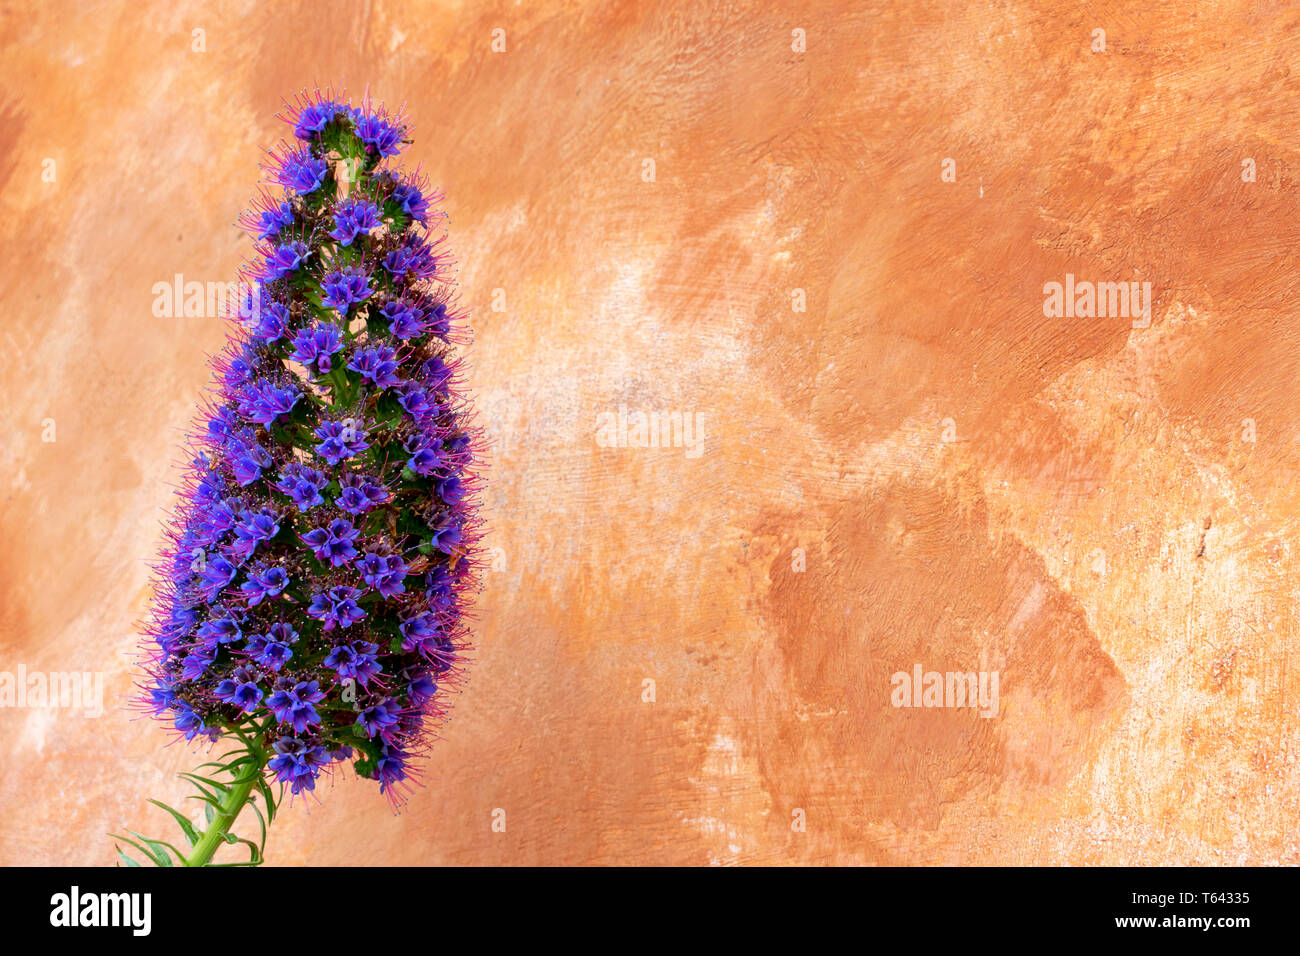 Violeta, orgullo de Madeira flor plantas tolerantes a la sequía en plena floración contra la pared pintada con trazos de pincel ancho en la cálida luz de color marrón. Foto de stock